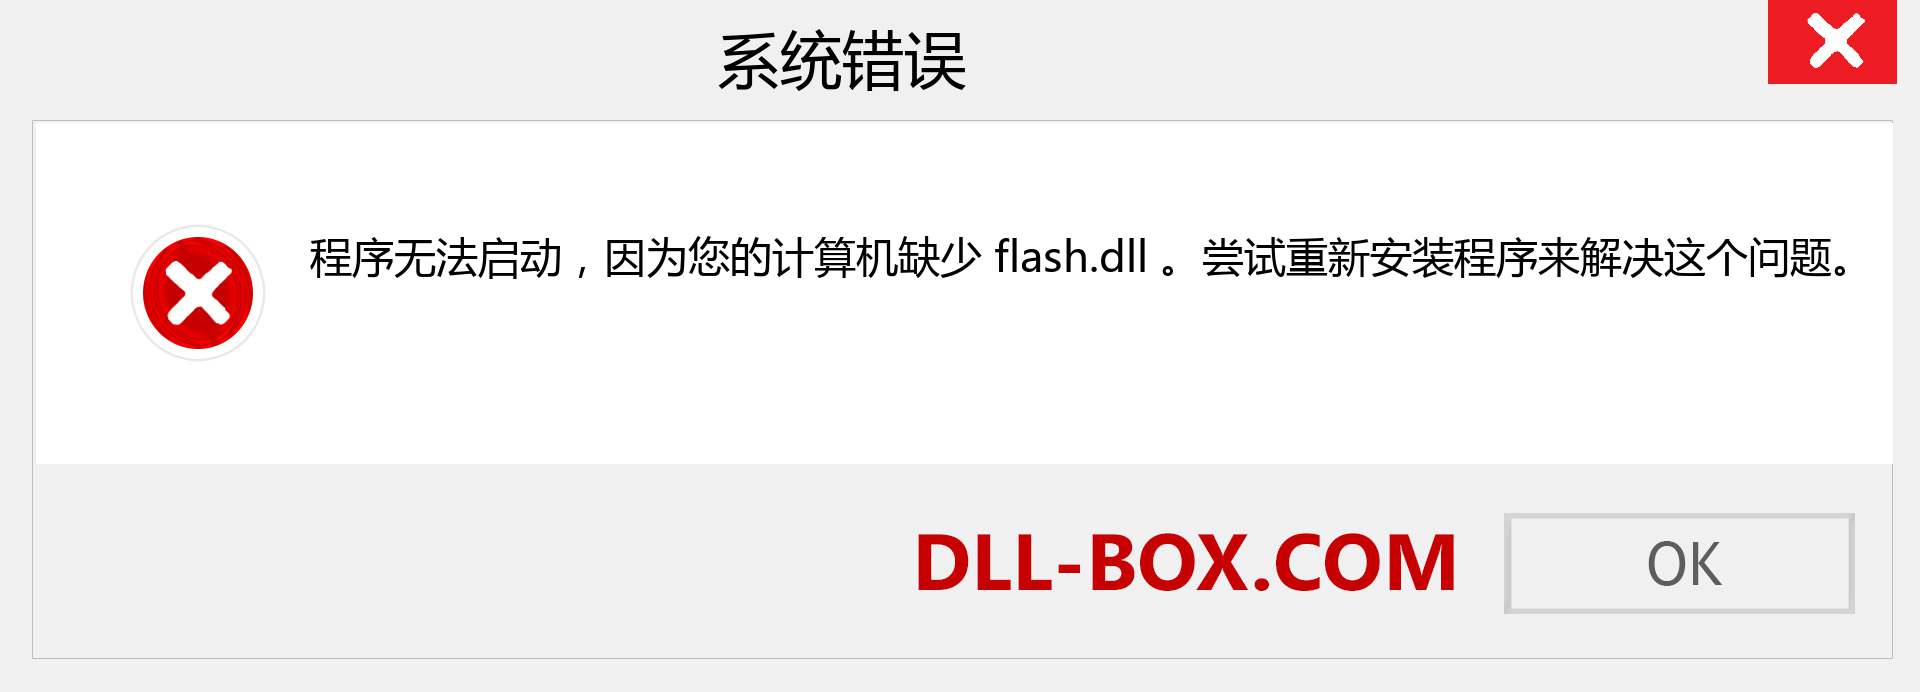 flash.dll 文件丢失？。 适用于 Windows 7、8、10 的下载 - 修复 Windows、照片、图像上的 flash dll 丢失错误